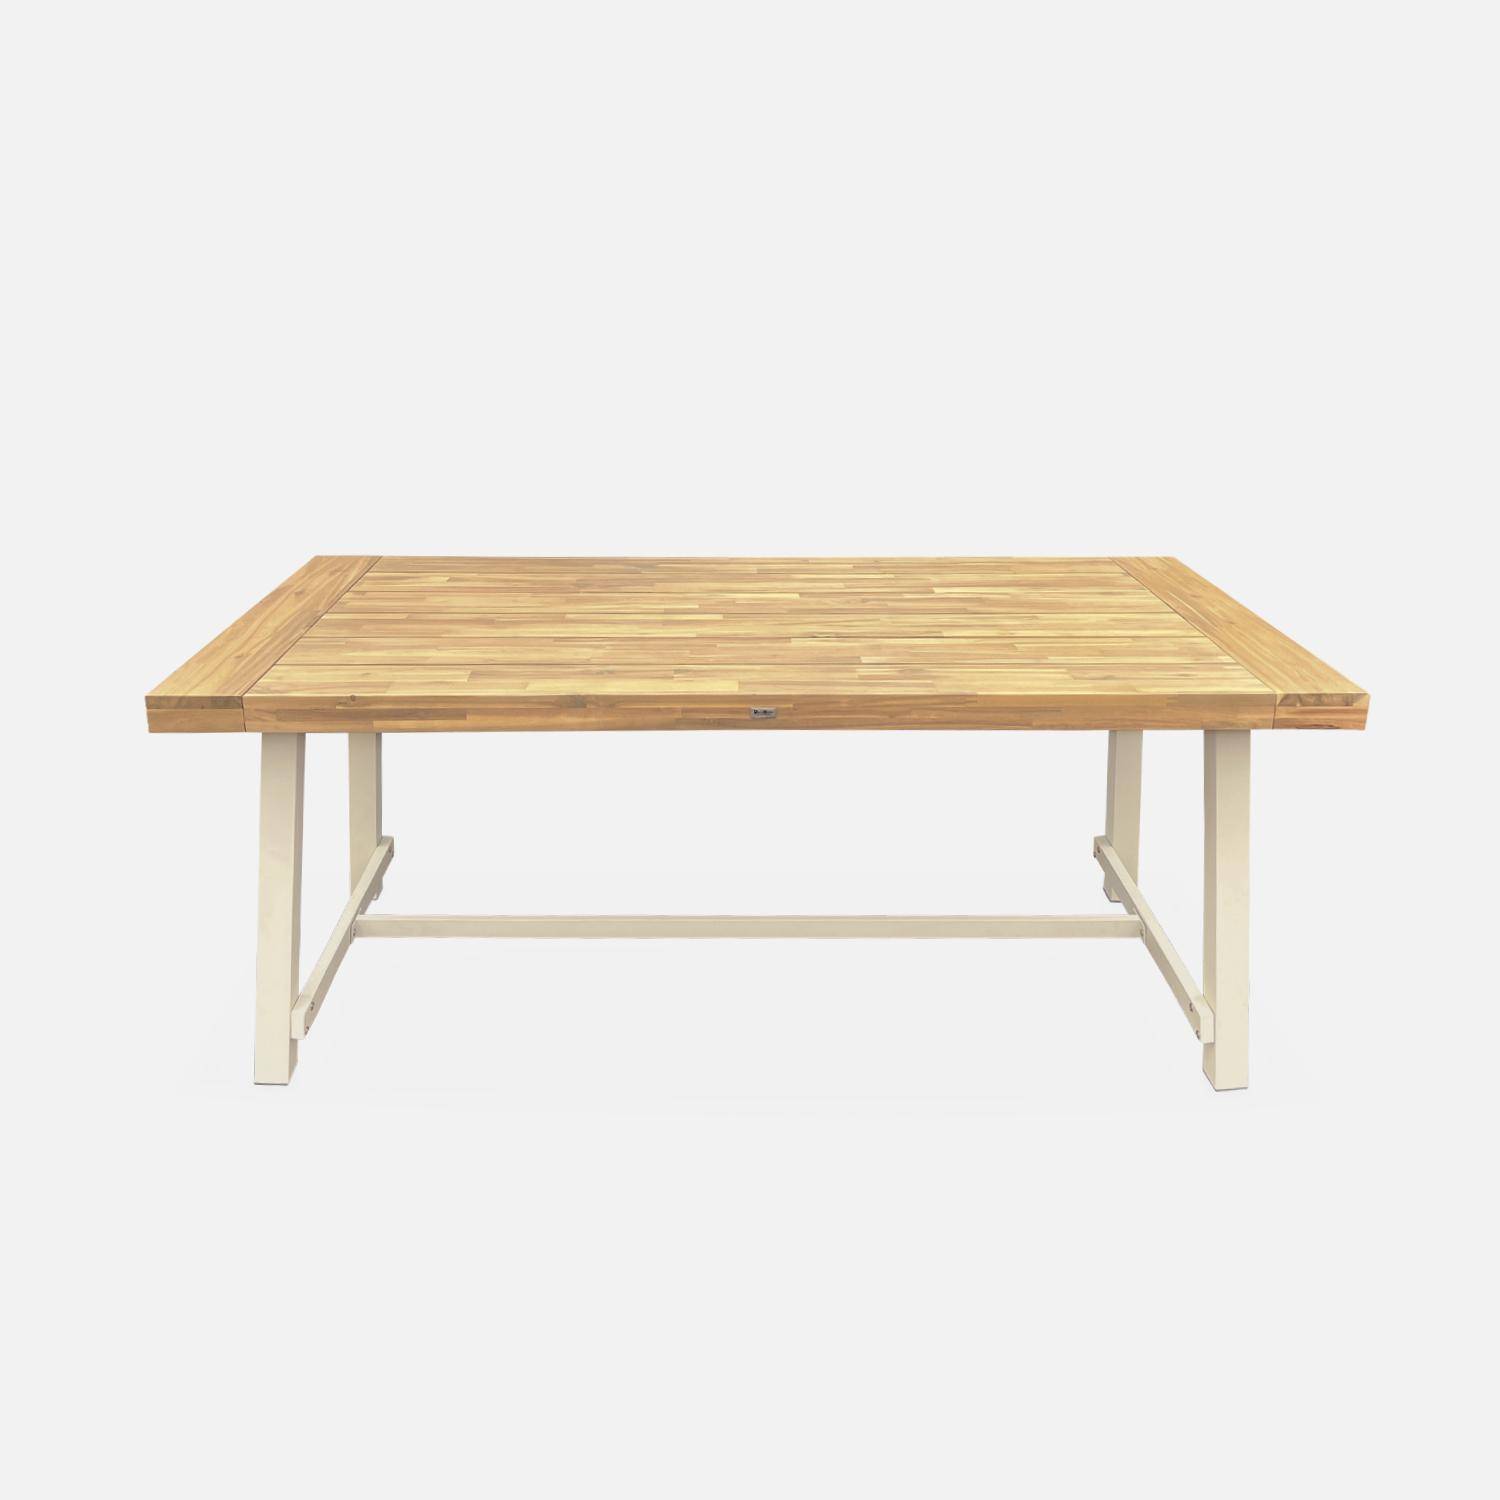 Tavolo da interno/esterno in legno chiaro, effetto teak e acciaio zincato avorio, Fortaleza L190 x P91,5 x H76cm 6-8 posti Photo4